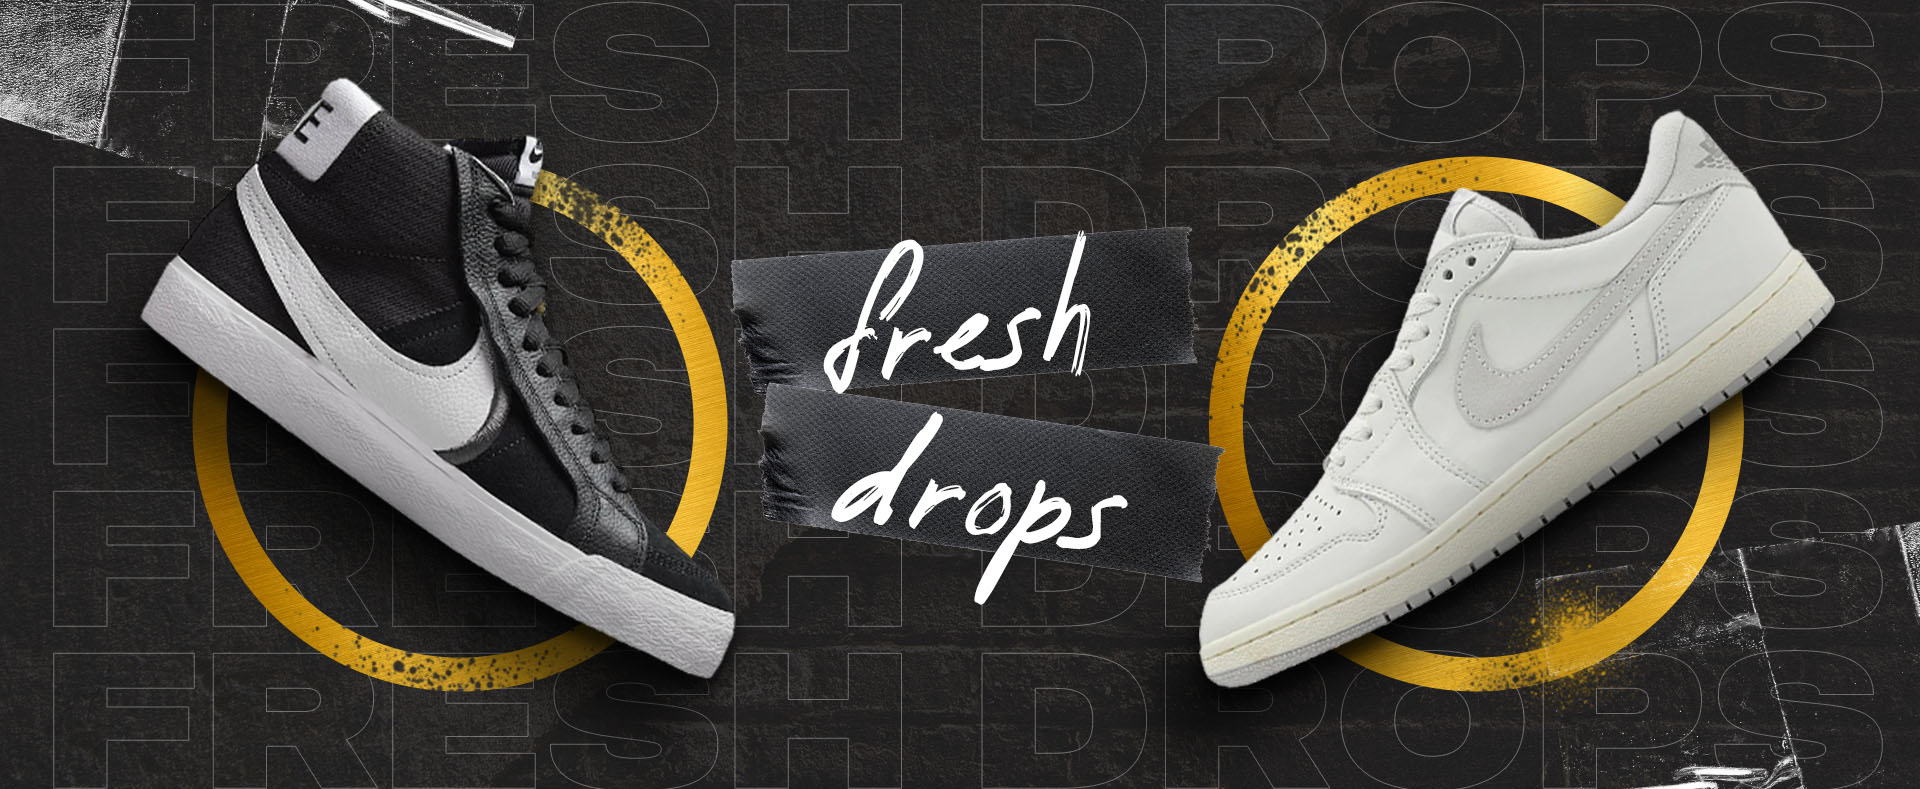 Nike Fresh Drops